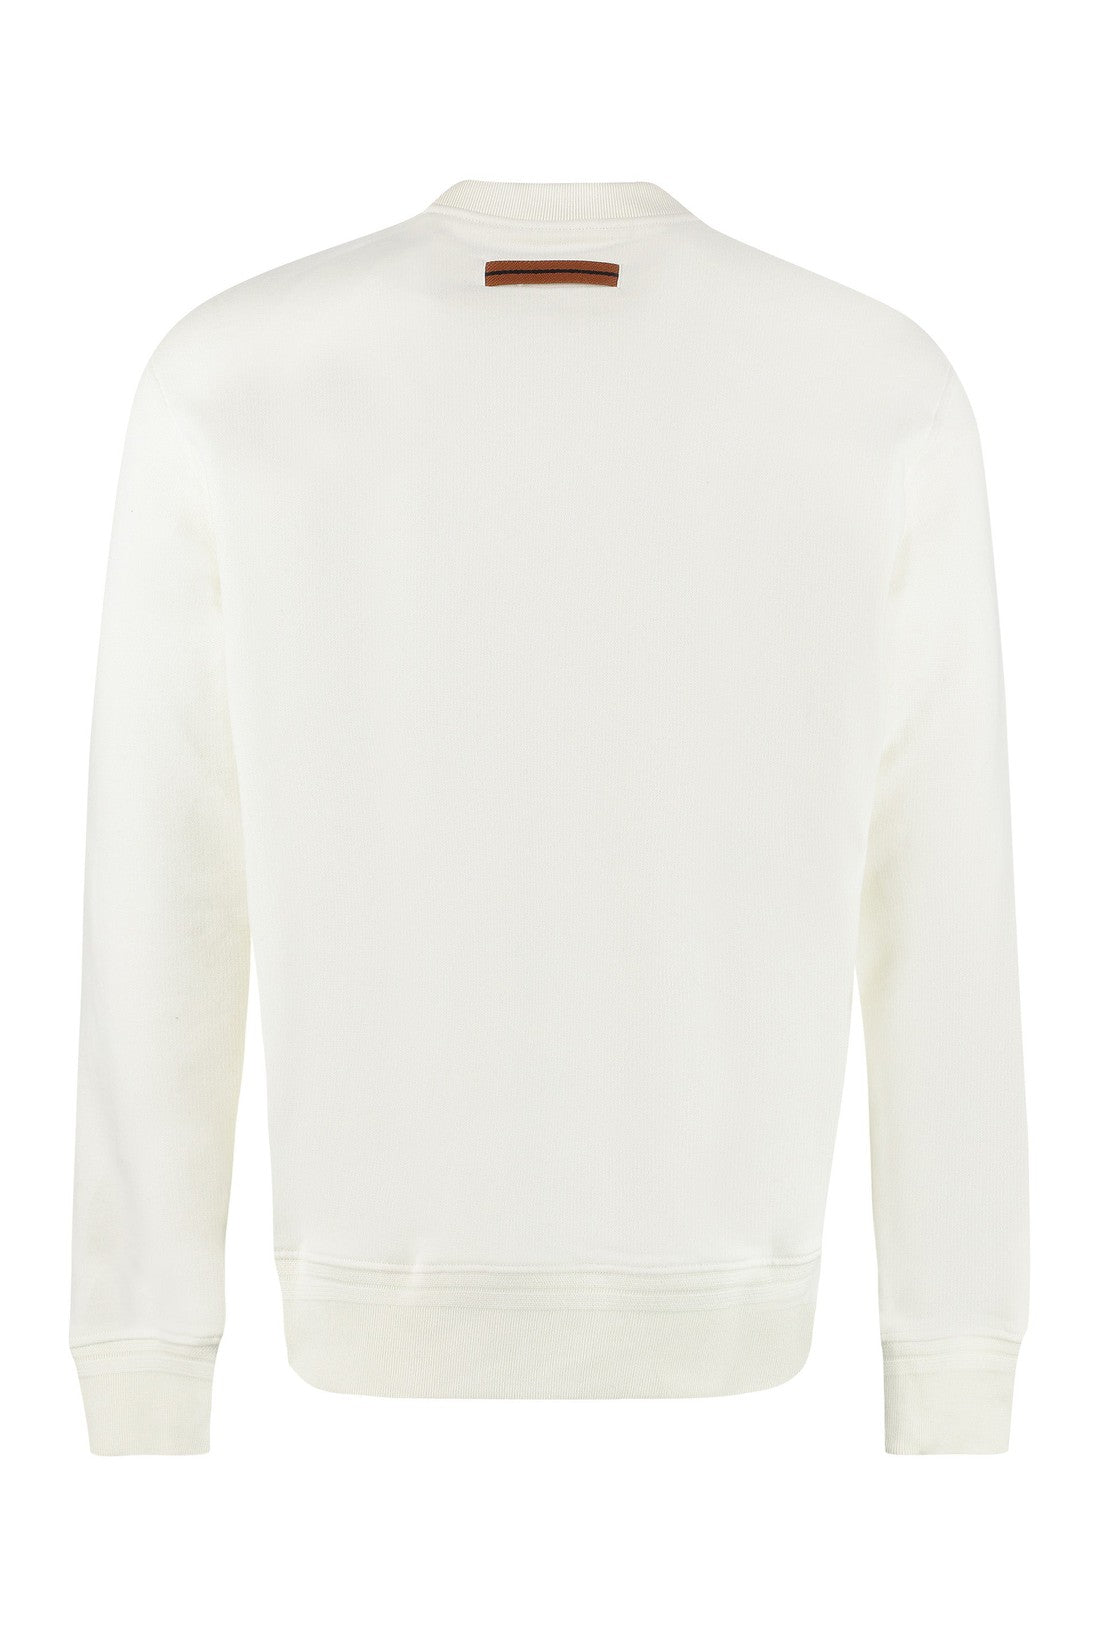 Zegna-OUTLET-SALE-Logo detail cotton sweatshirt-ARCHIVIST